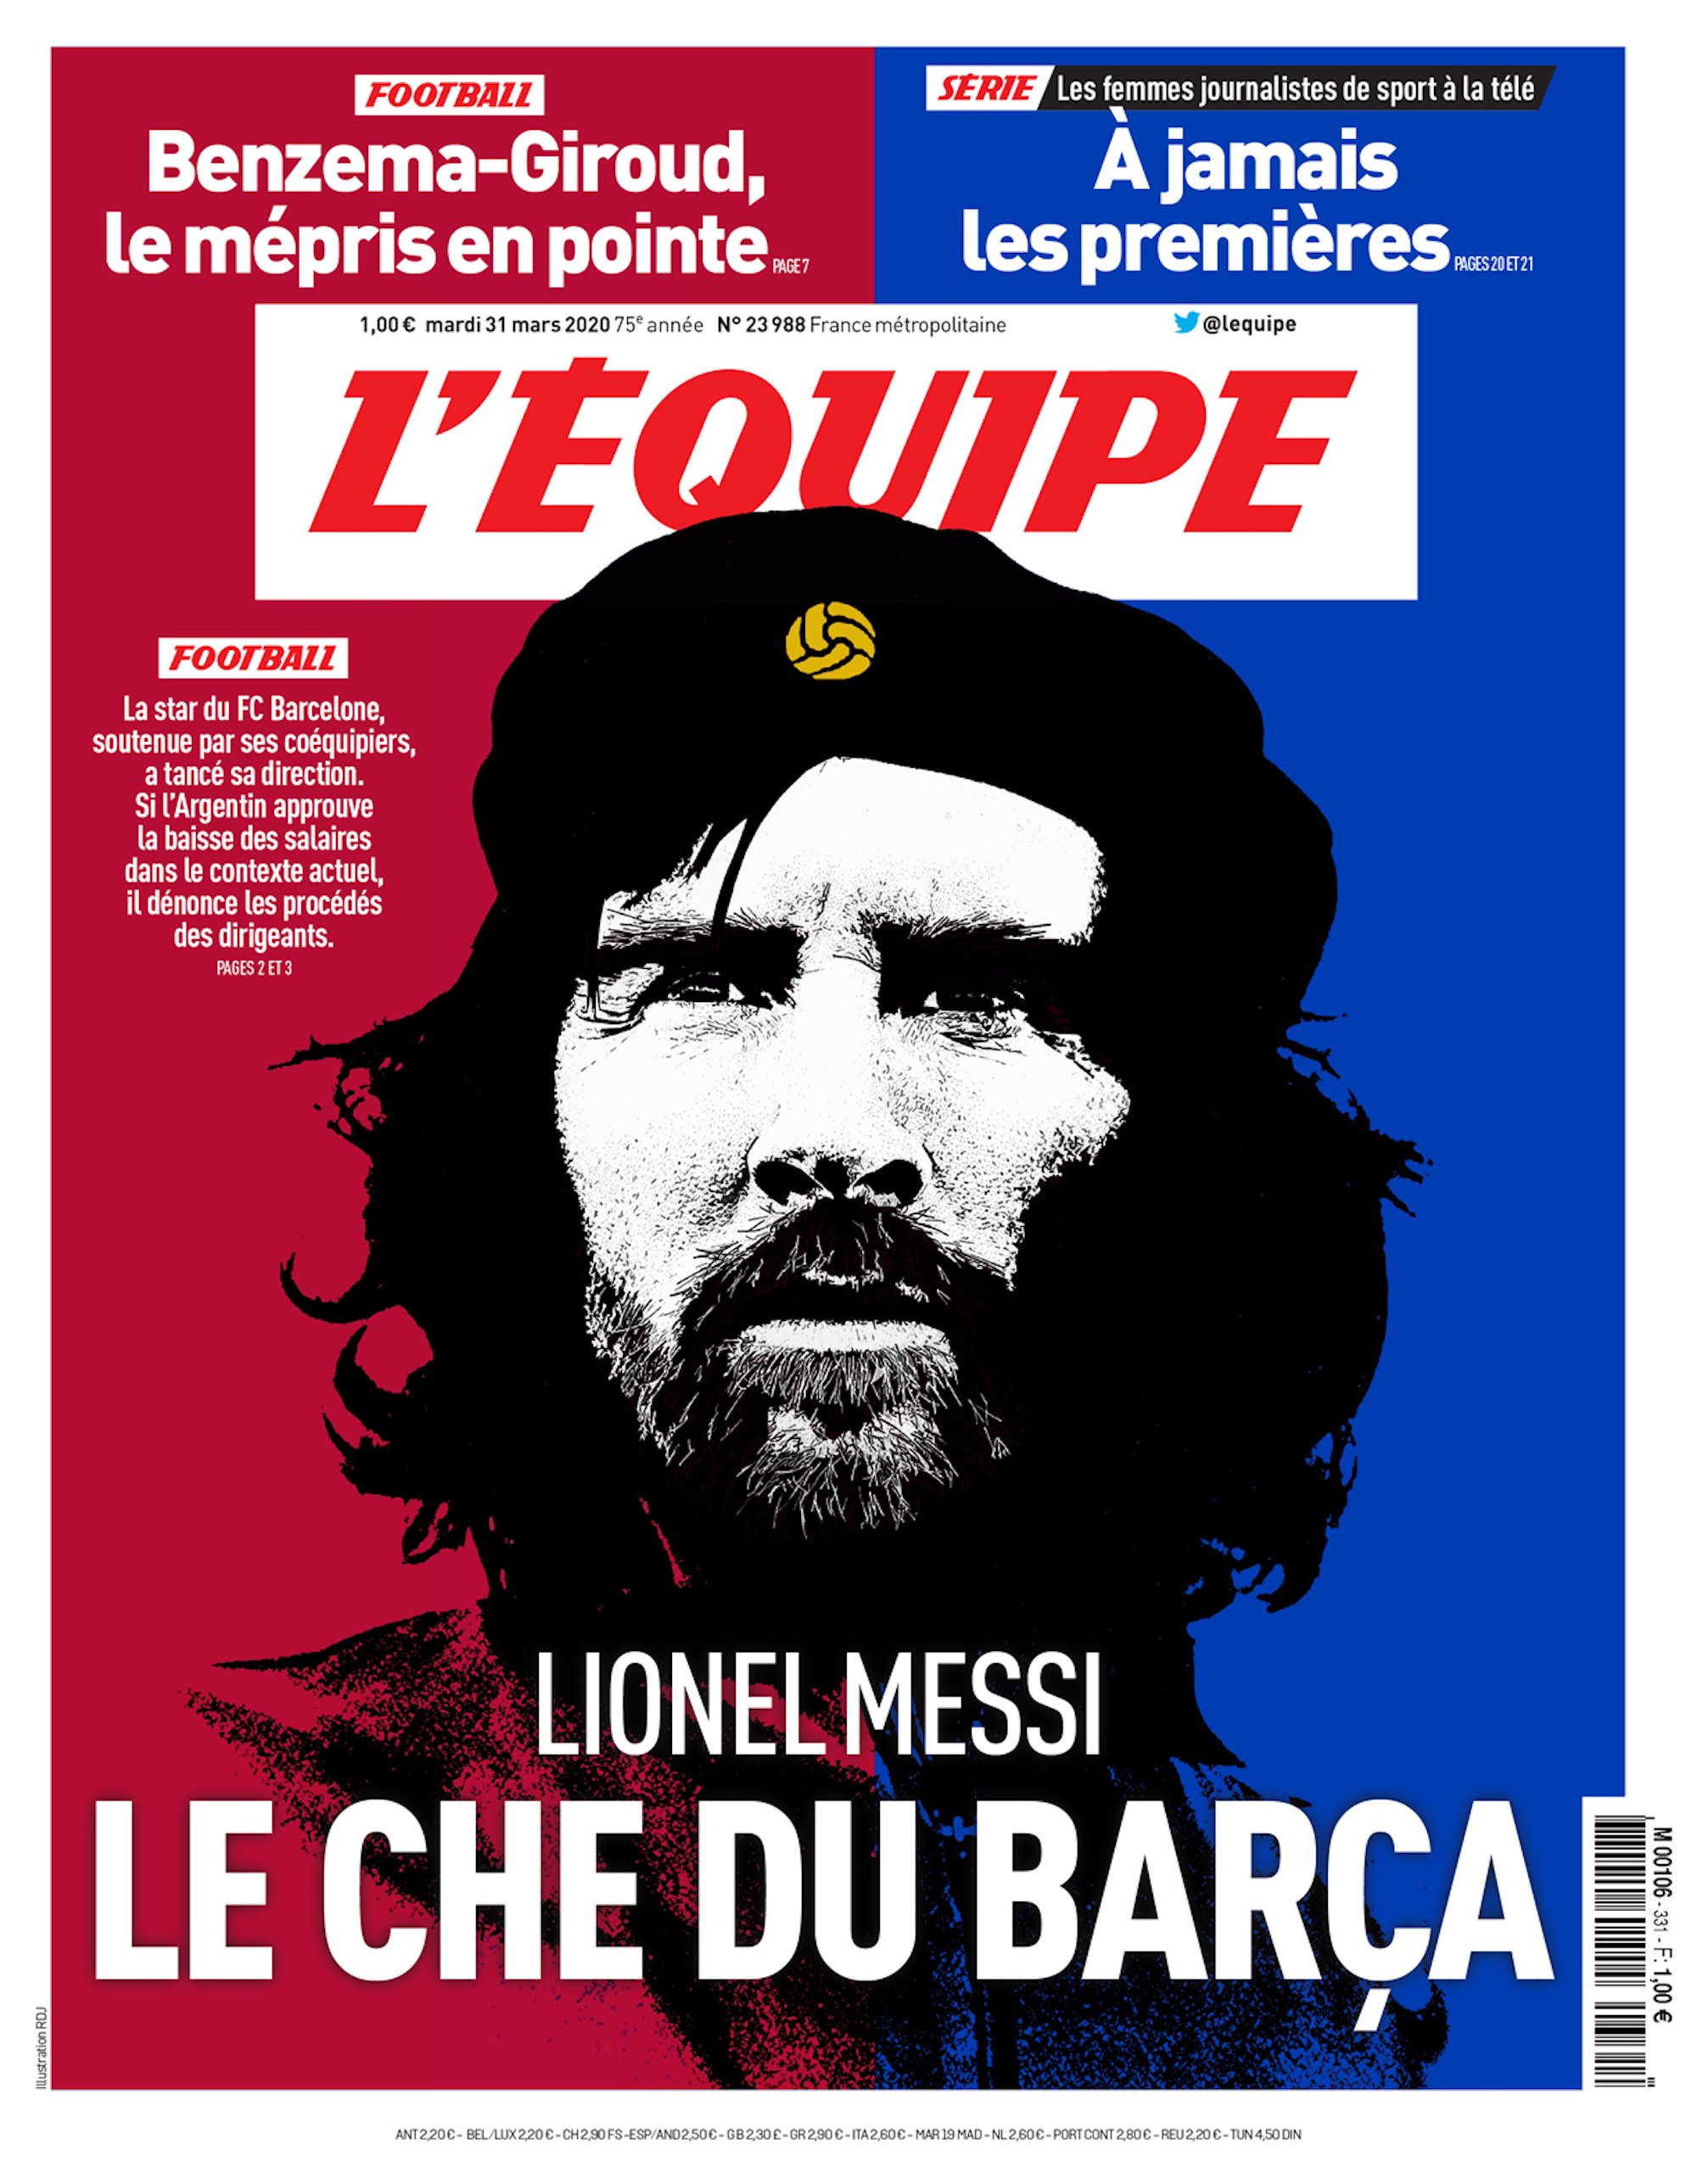 Messi és el Che Guevara del Barça, segons 'L'Équipe'